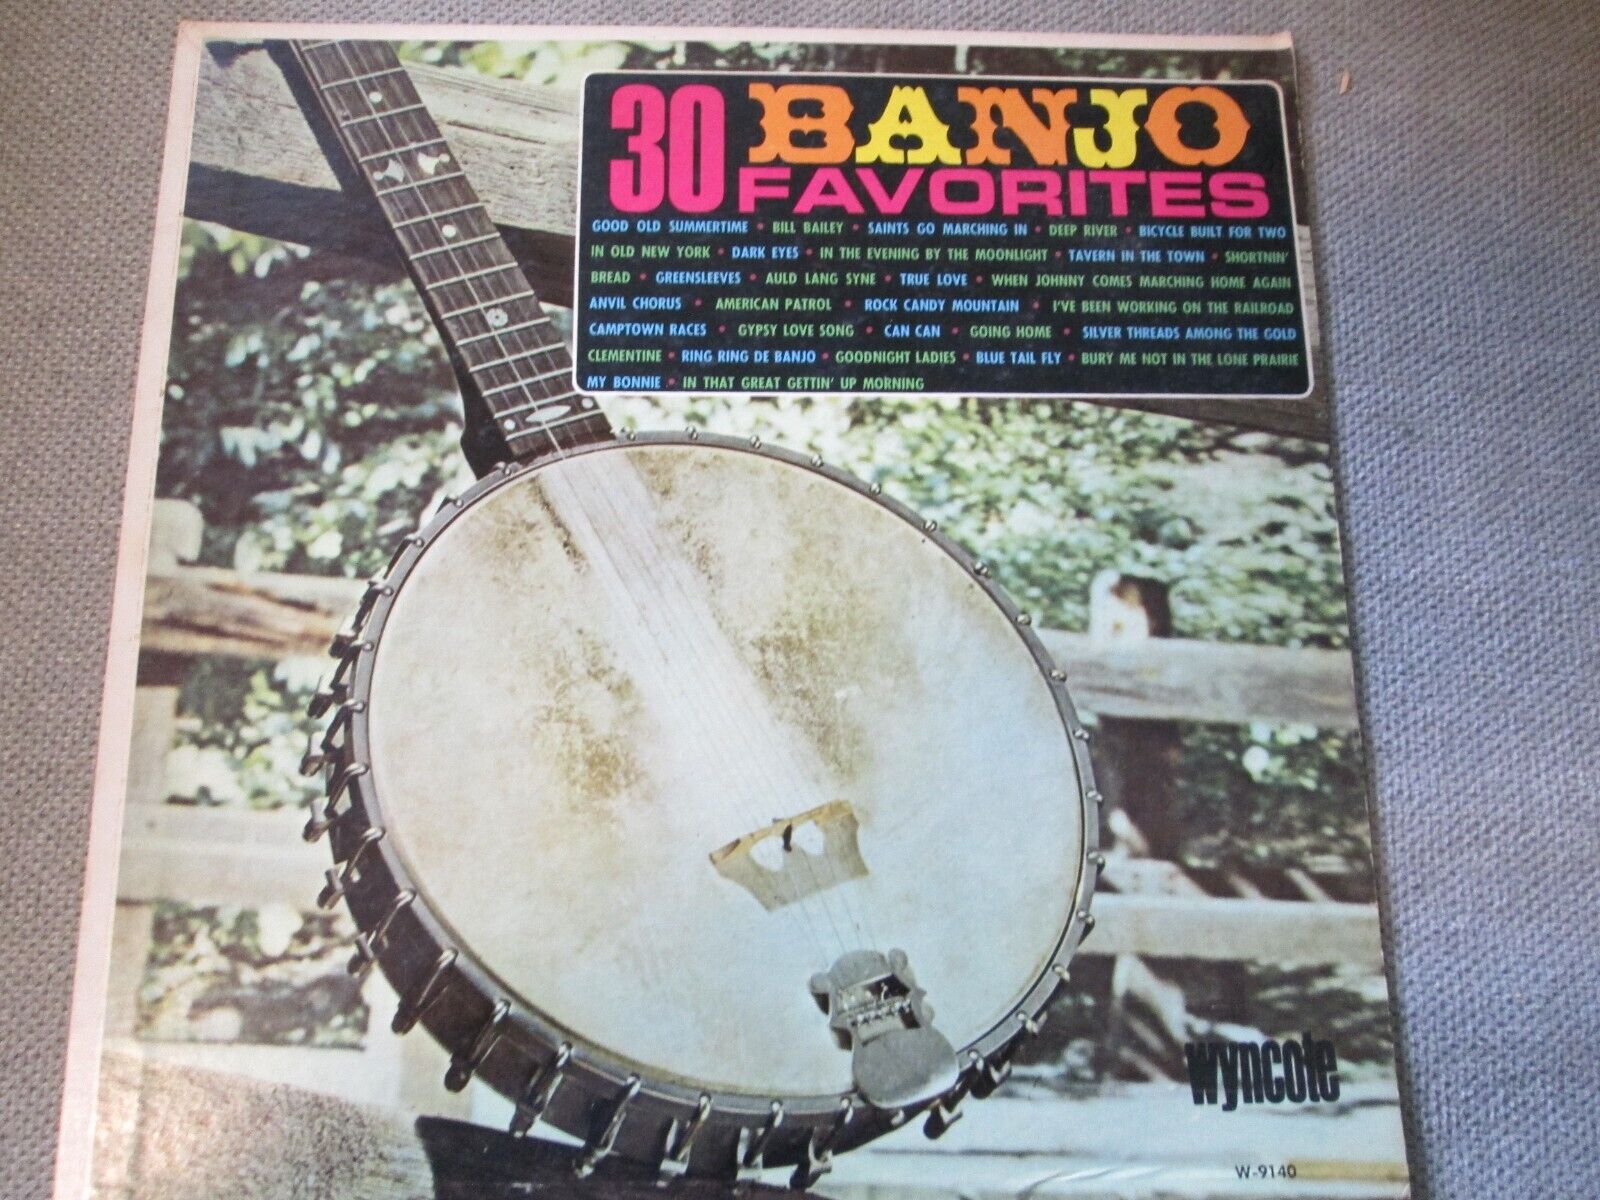 30 Banjo Favorites Wyncote Mono Record 33 1/3 LP Album